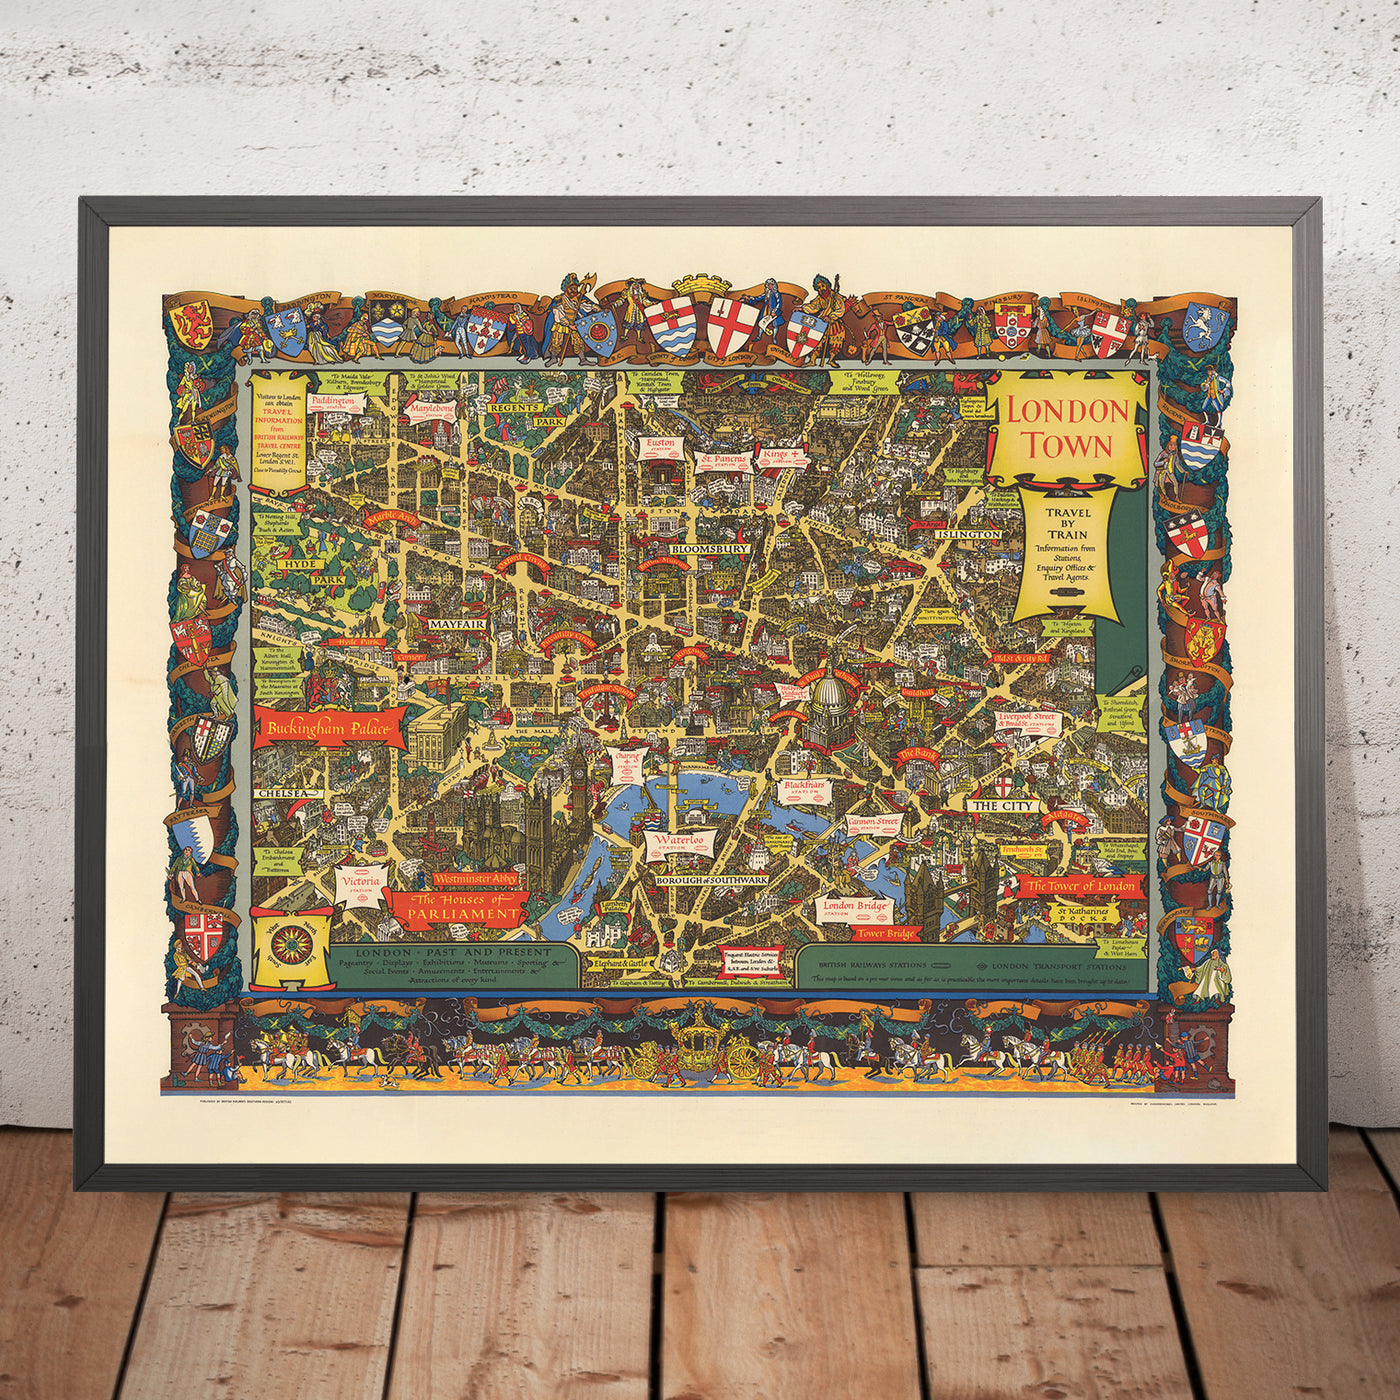 Antiguo mapa pictórico de la ciudad de Londres por British Railways y Kerry Lee, 1953: Torre de Londres, Parlamento, Palacio de Buckingham, Catedral de San Pablo